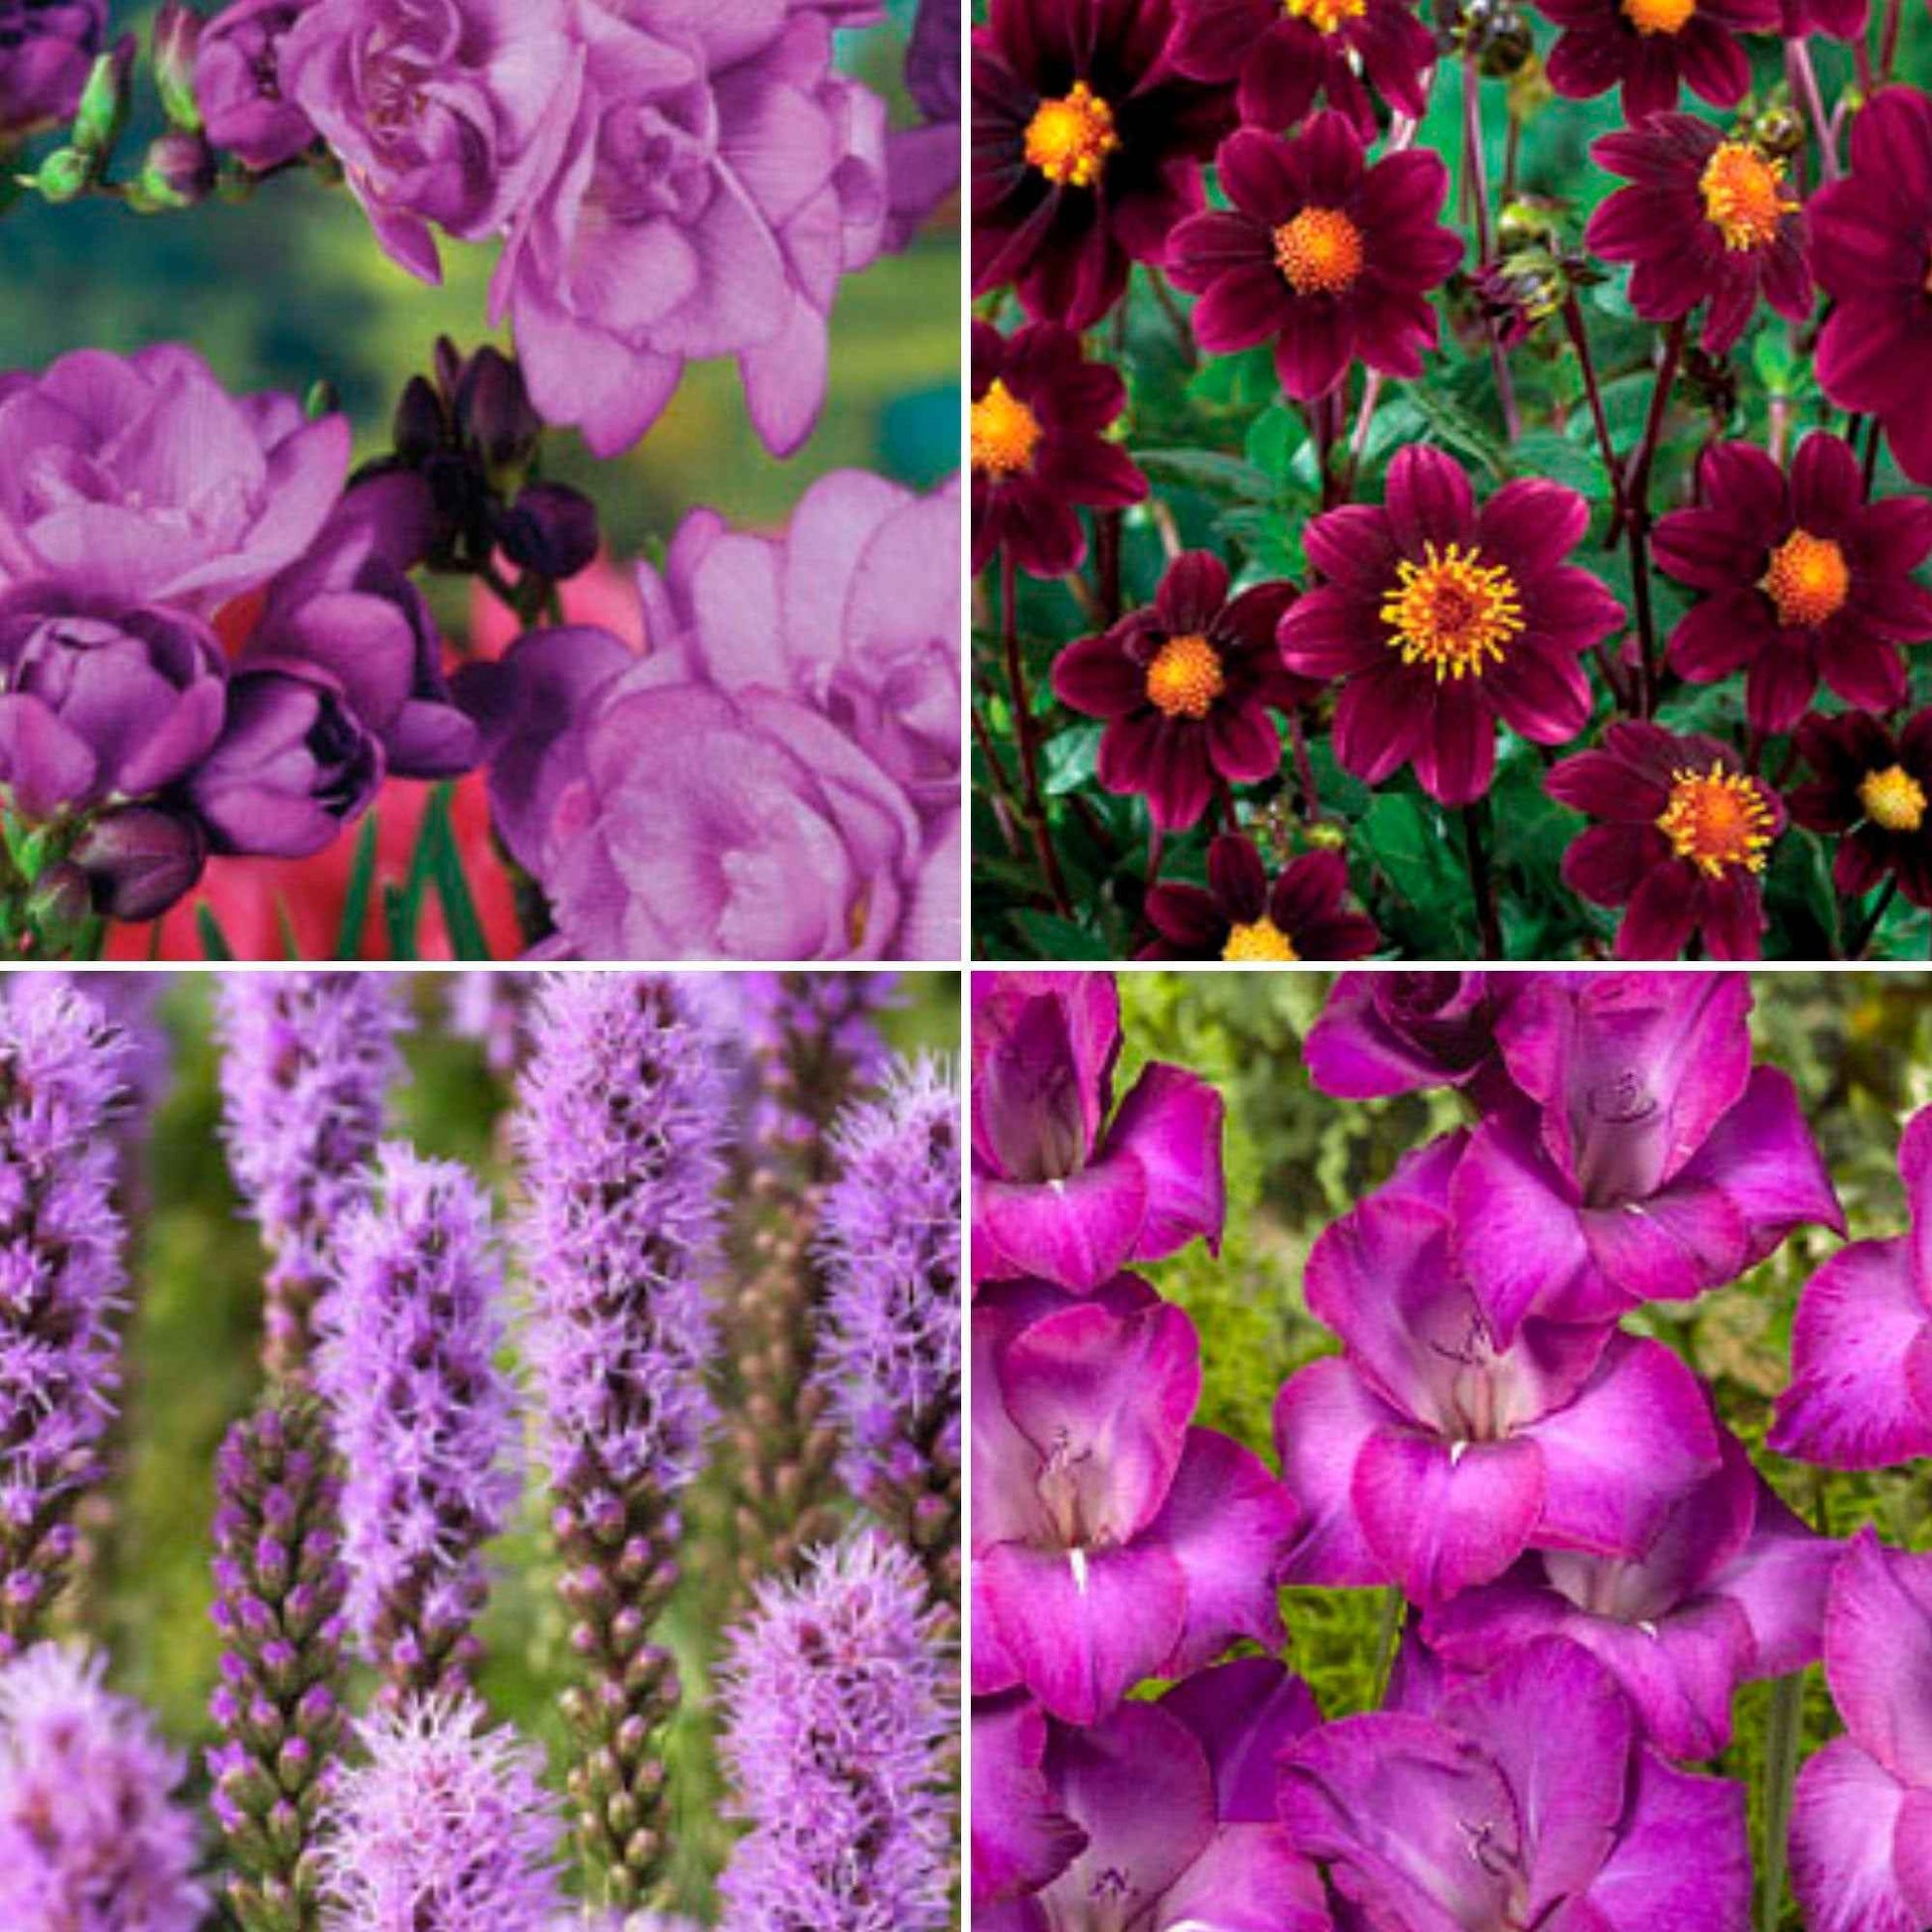 50x Mélange 'Collection Violette' violet - Bulbes de fleurs par catégorie